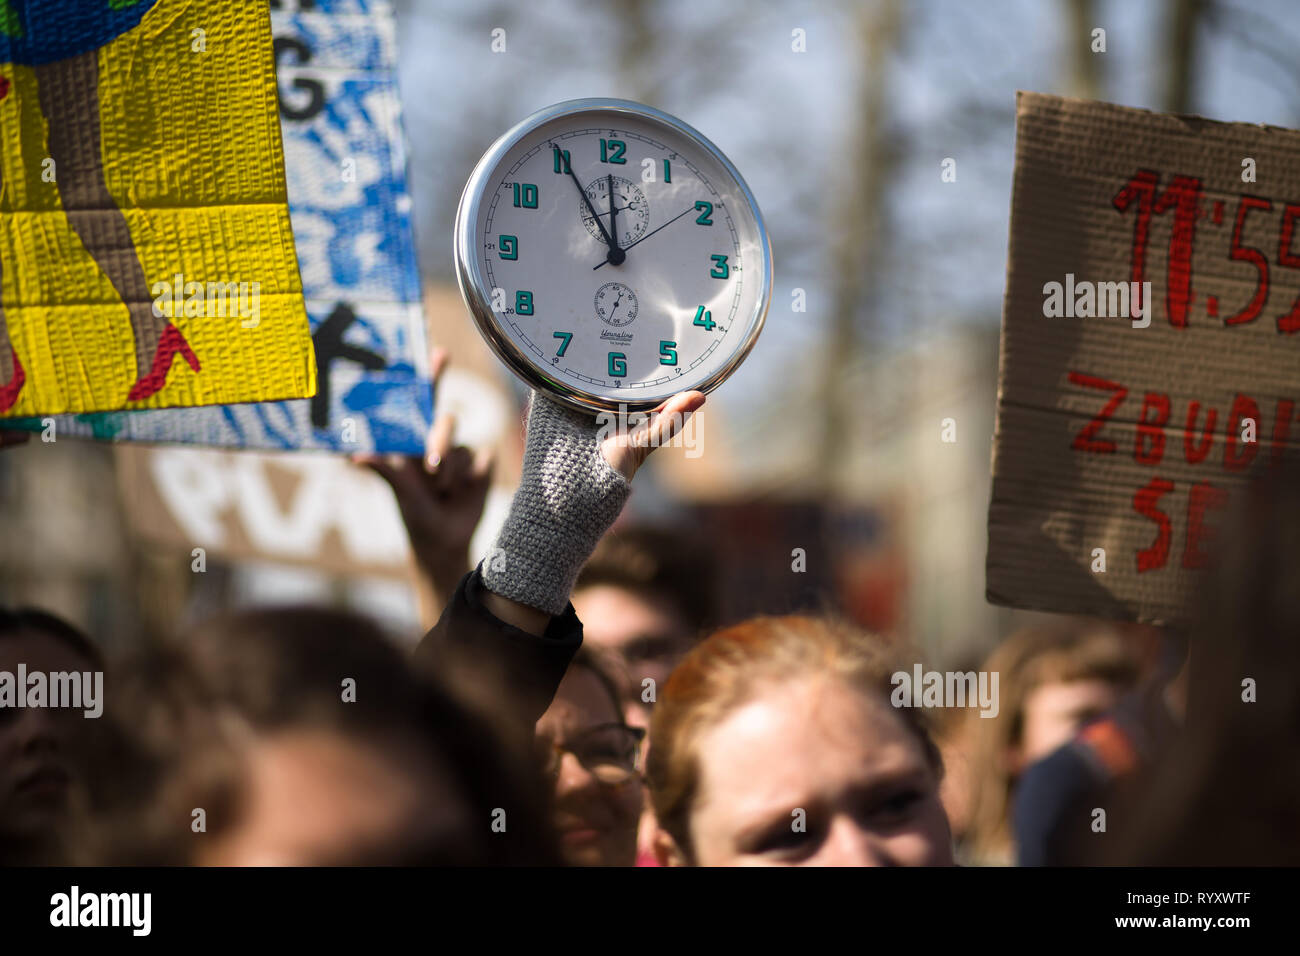 Beijing, la Slovénie. Mar 15, 2019. Un manifestant montre une horloge qui s'élève à 11:55 symbolique, un grand temps d'agir, au cours d'une grève des jeunes pour le climat à Ljubljana, Slovénie, le 15 mars 2019. Autour de 5 000 étudiants ont protesté contre l'inaction sur le changement climatique à Ljubljana, dans le cadre d'un climat mondial de jeunes grève le vendredi. Credit : Luka Dakskobler/Xinhua/Alamy Live News Banque D'Images